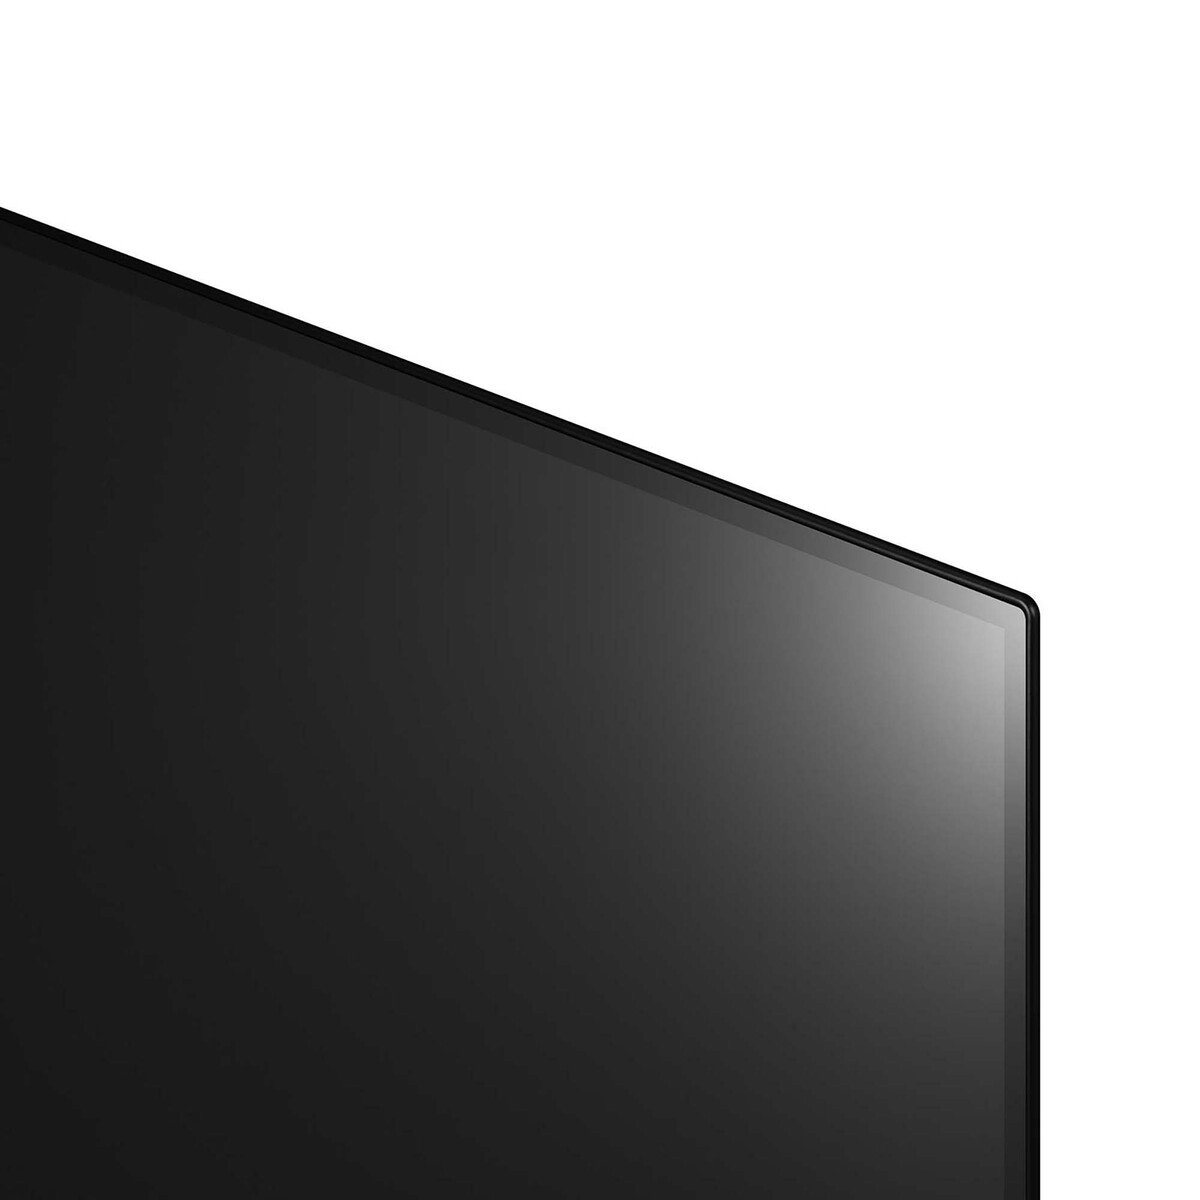 إل جي شاشة تلفزيون أو إل إي دي 65 بوصة من سلسلة (2020) 65CXPVA